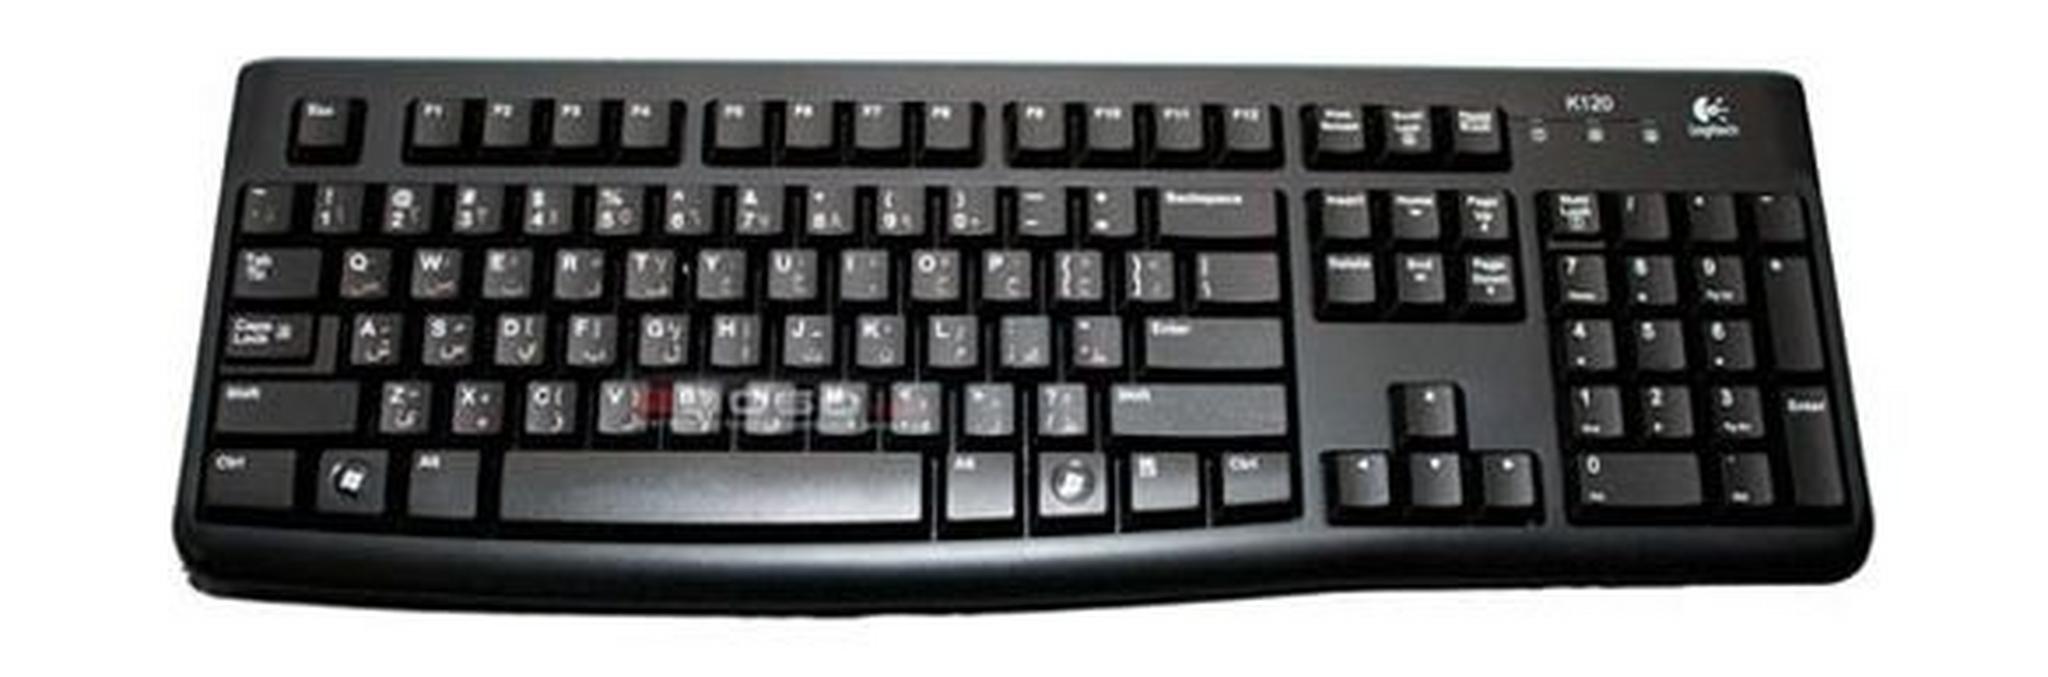 لوحة المفاتيح والمااوس من لوجيتك - إنجيليزي/عربي MK120 (920-002546)